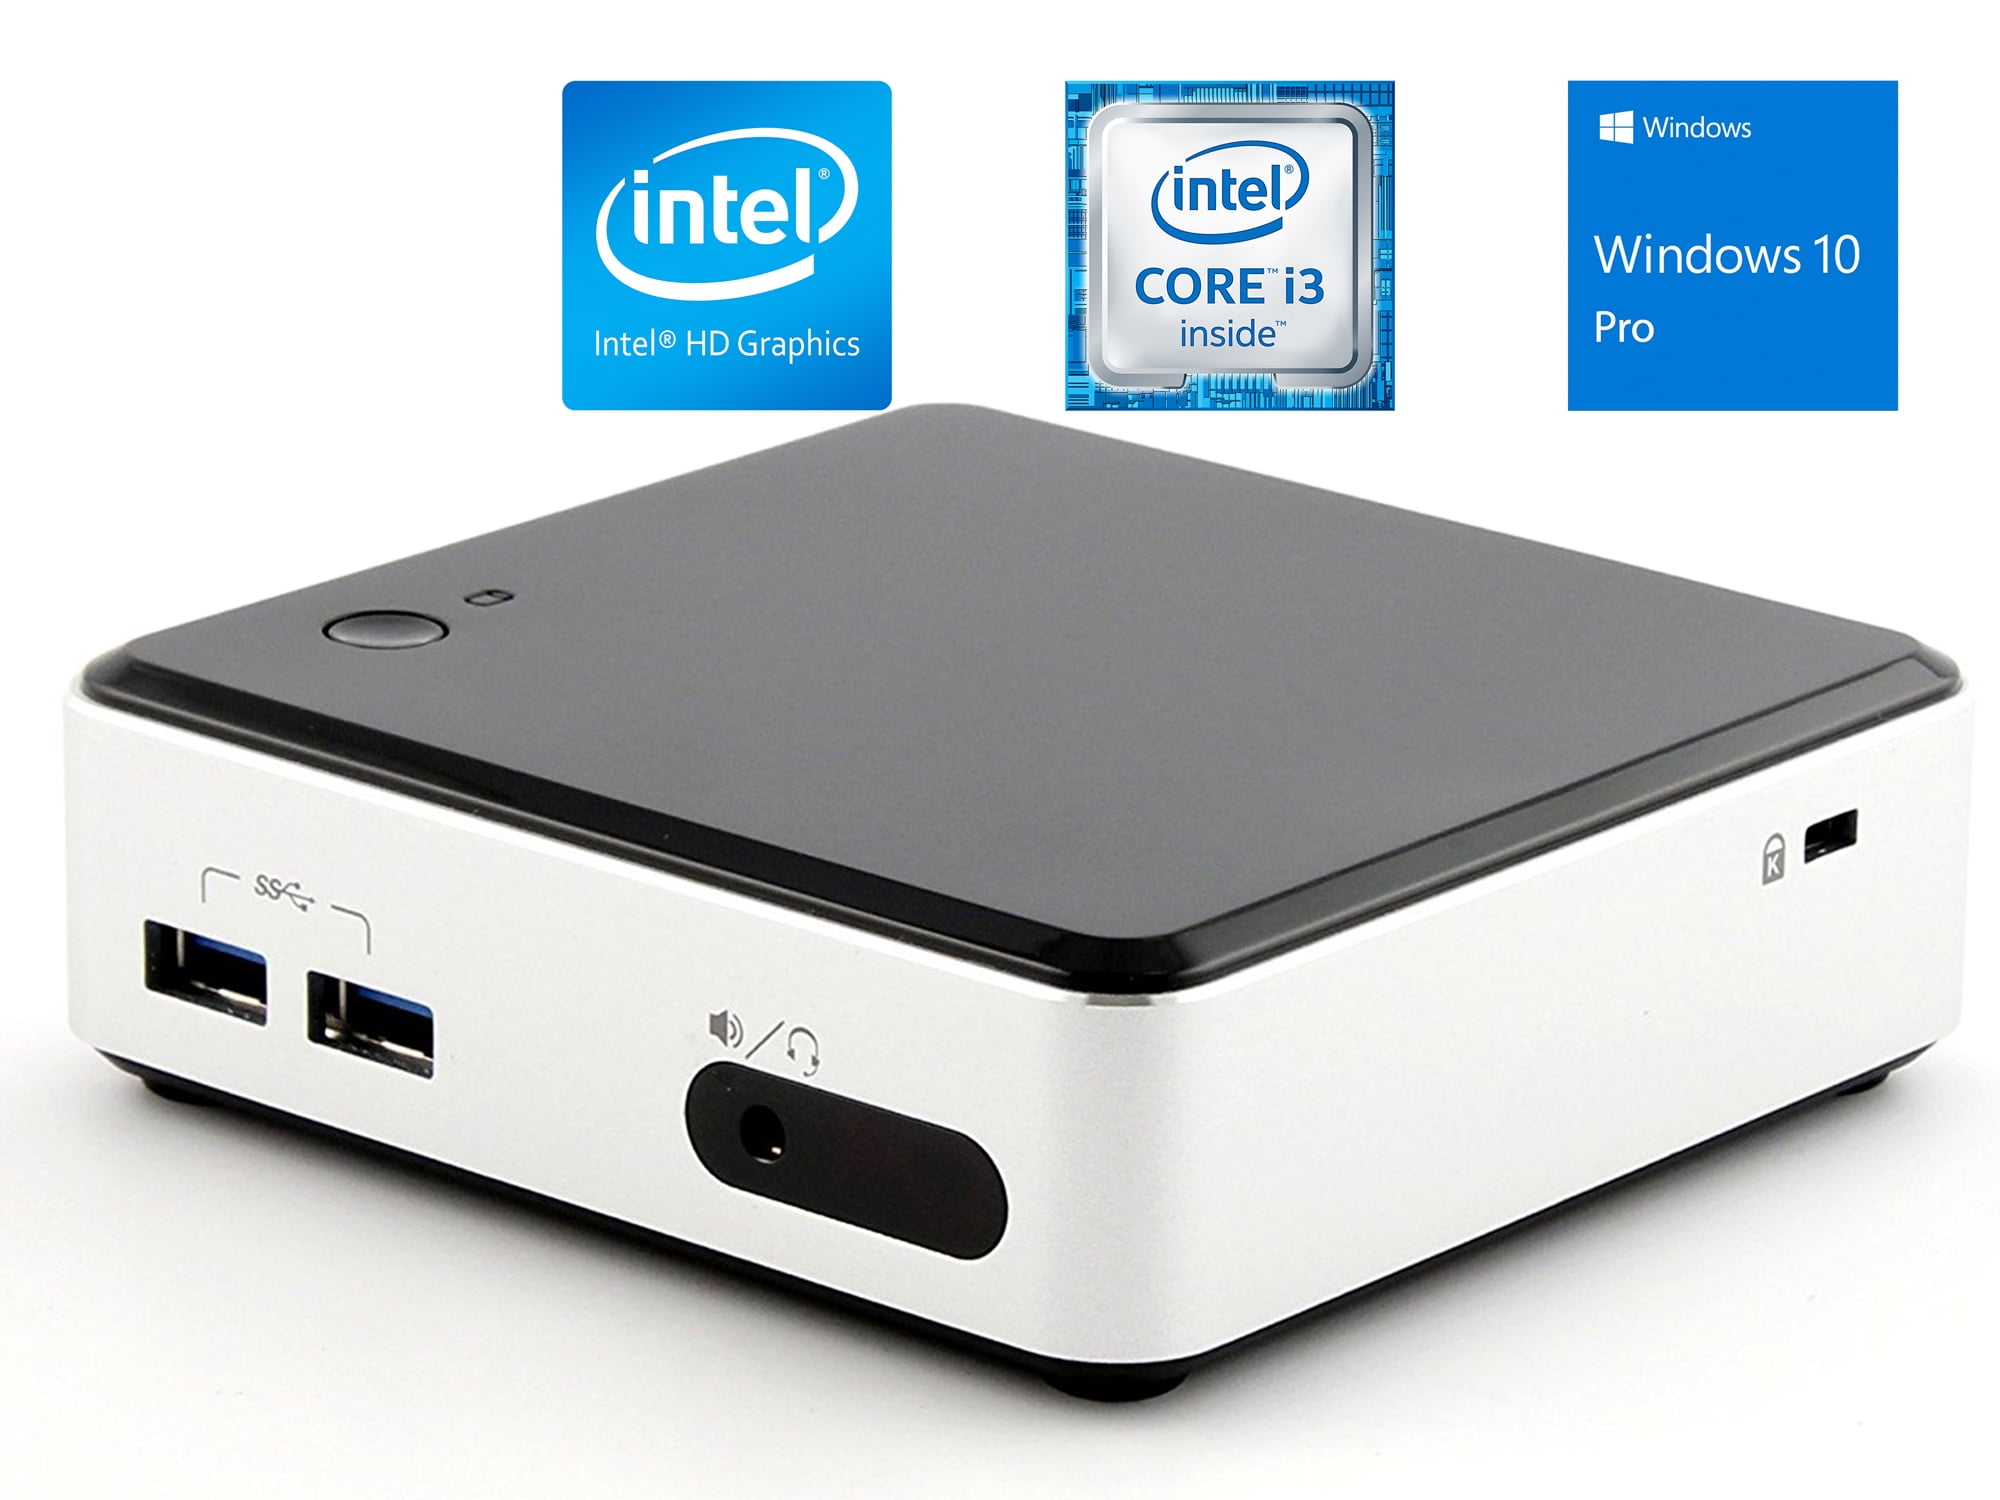 Intel NUC D34010WYK Mini PC, Intel Core i3-4010U 1.7GHz, 8GB RAM, 256GB